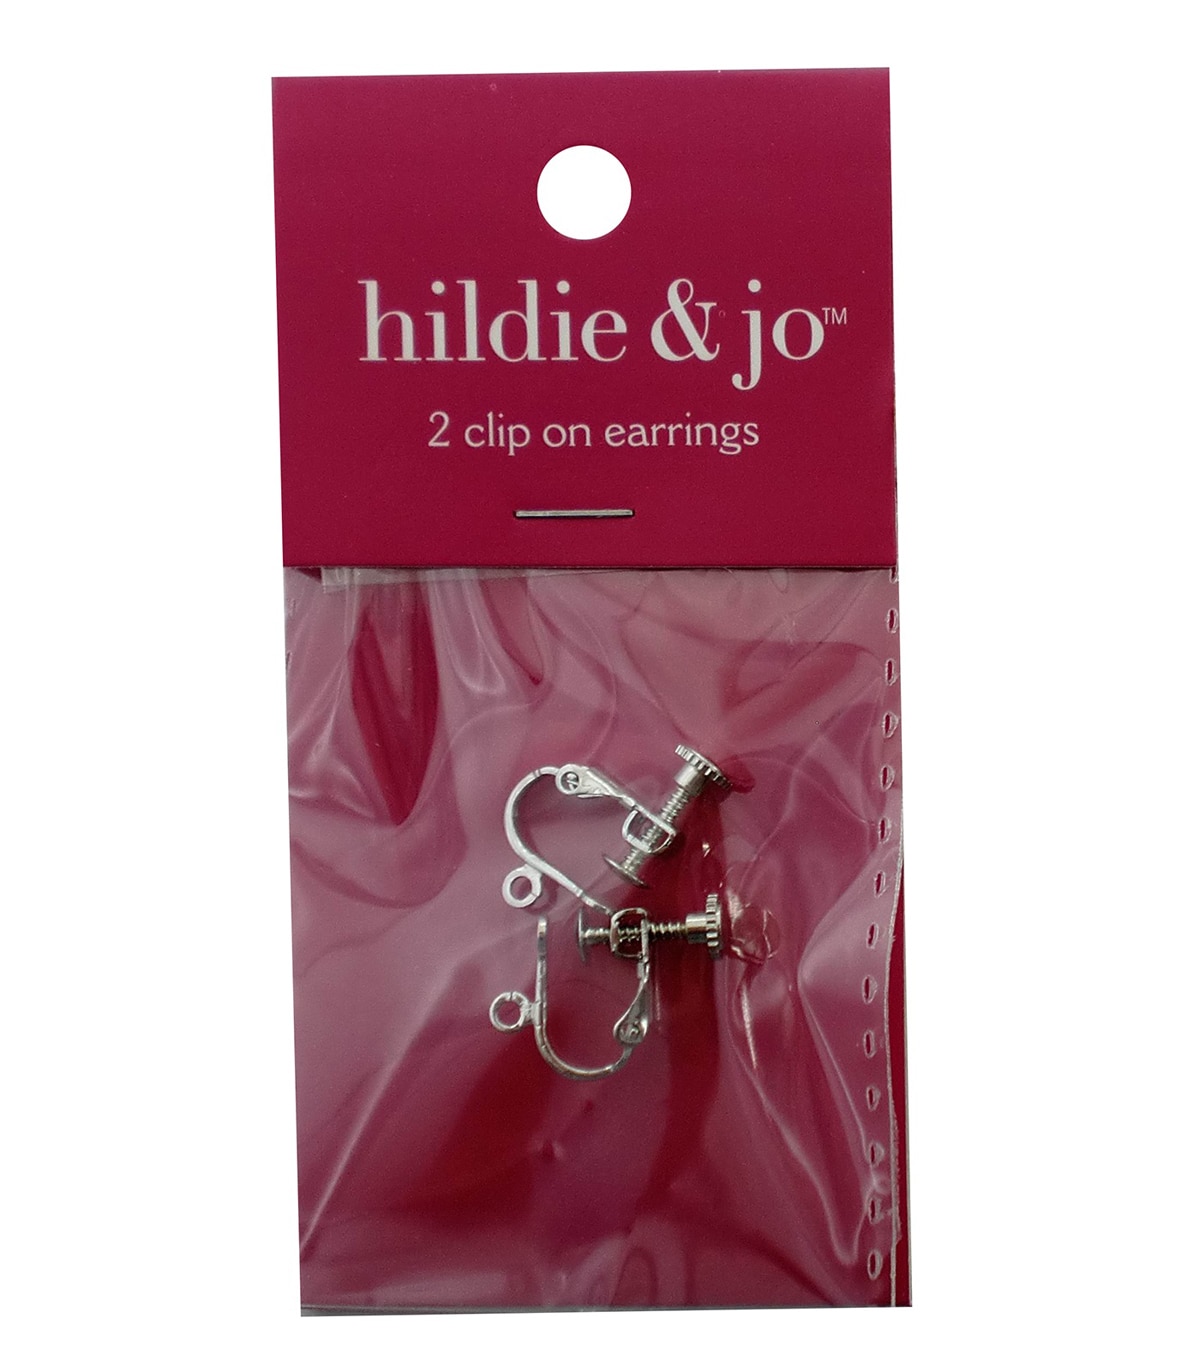 Heidi Heart Hoop Earrings Brass – INK+ALLOY, LLC